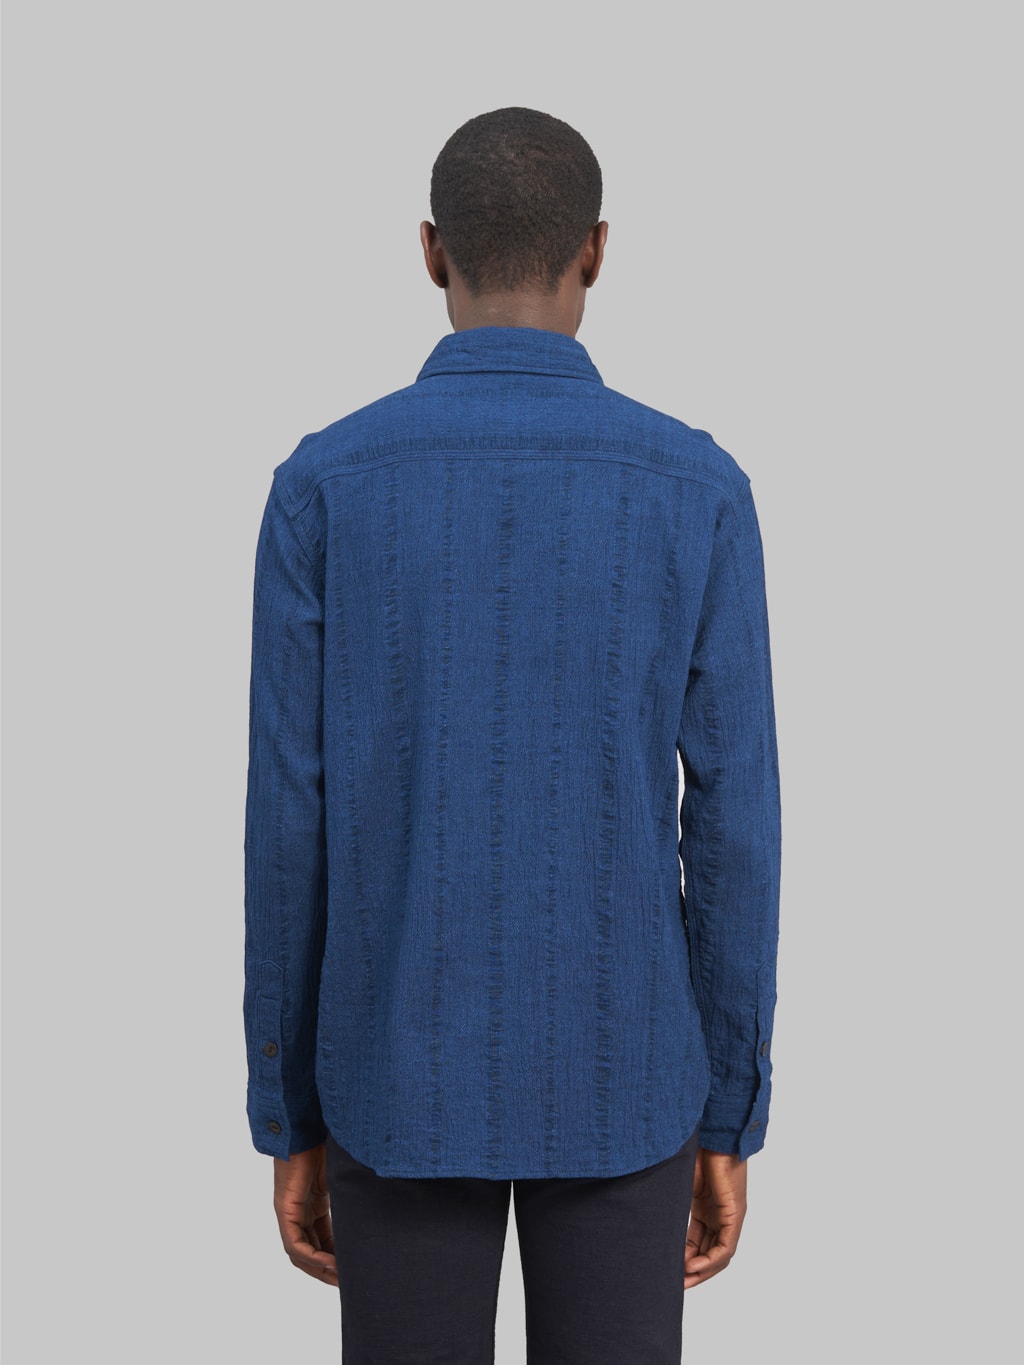 ues twisted yarn triple stitch indigo shirt model back fit